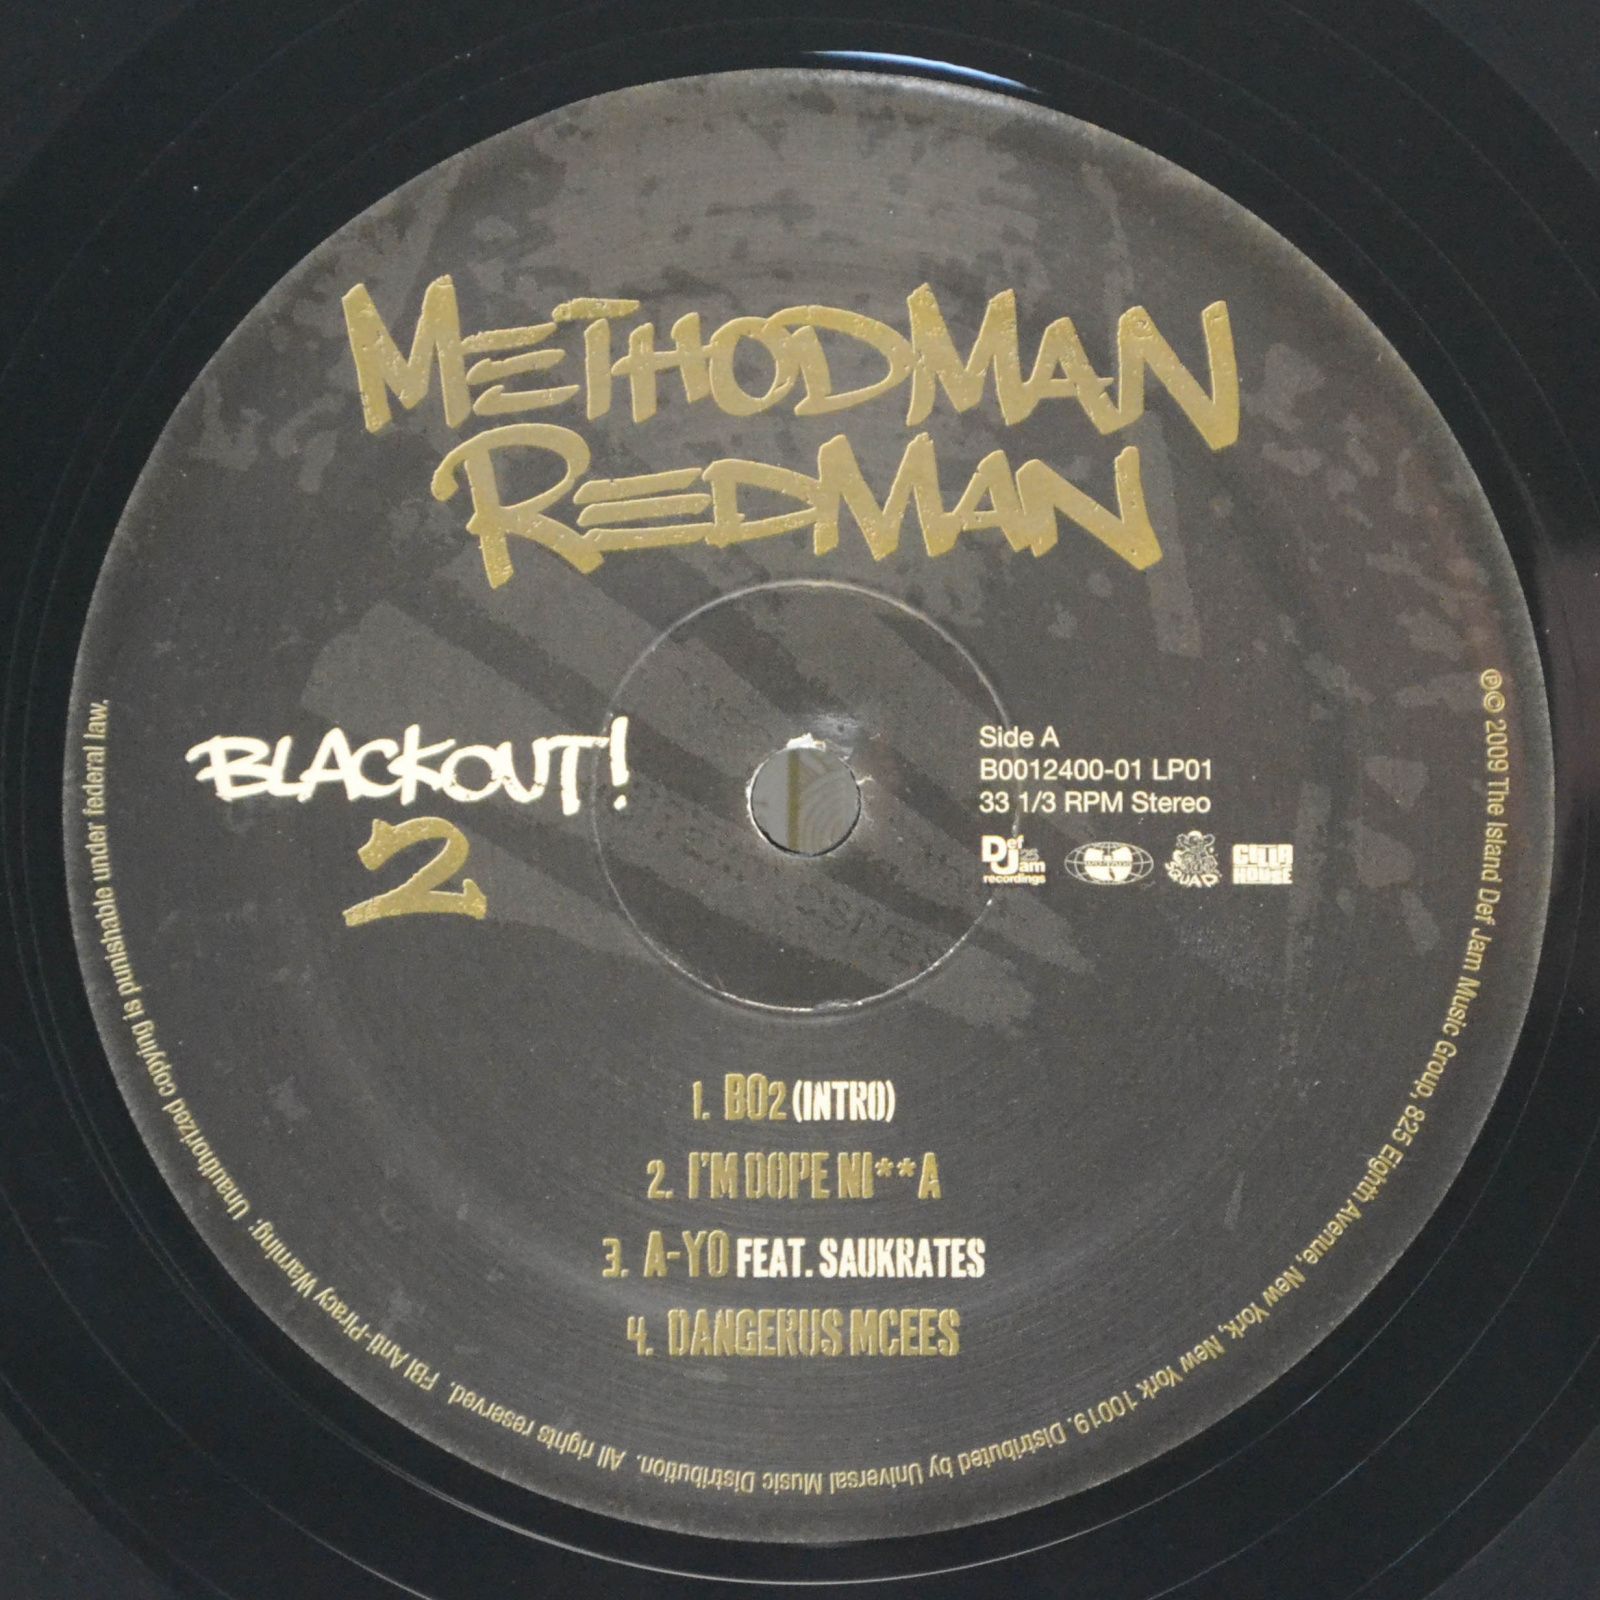 Method Man & Redman — Blackout! 2 (2LP, USA), 2009